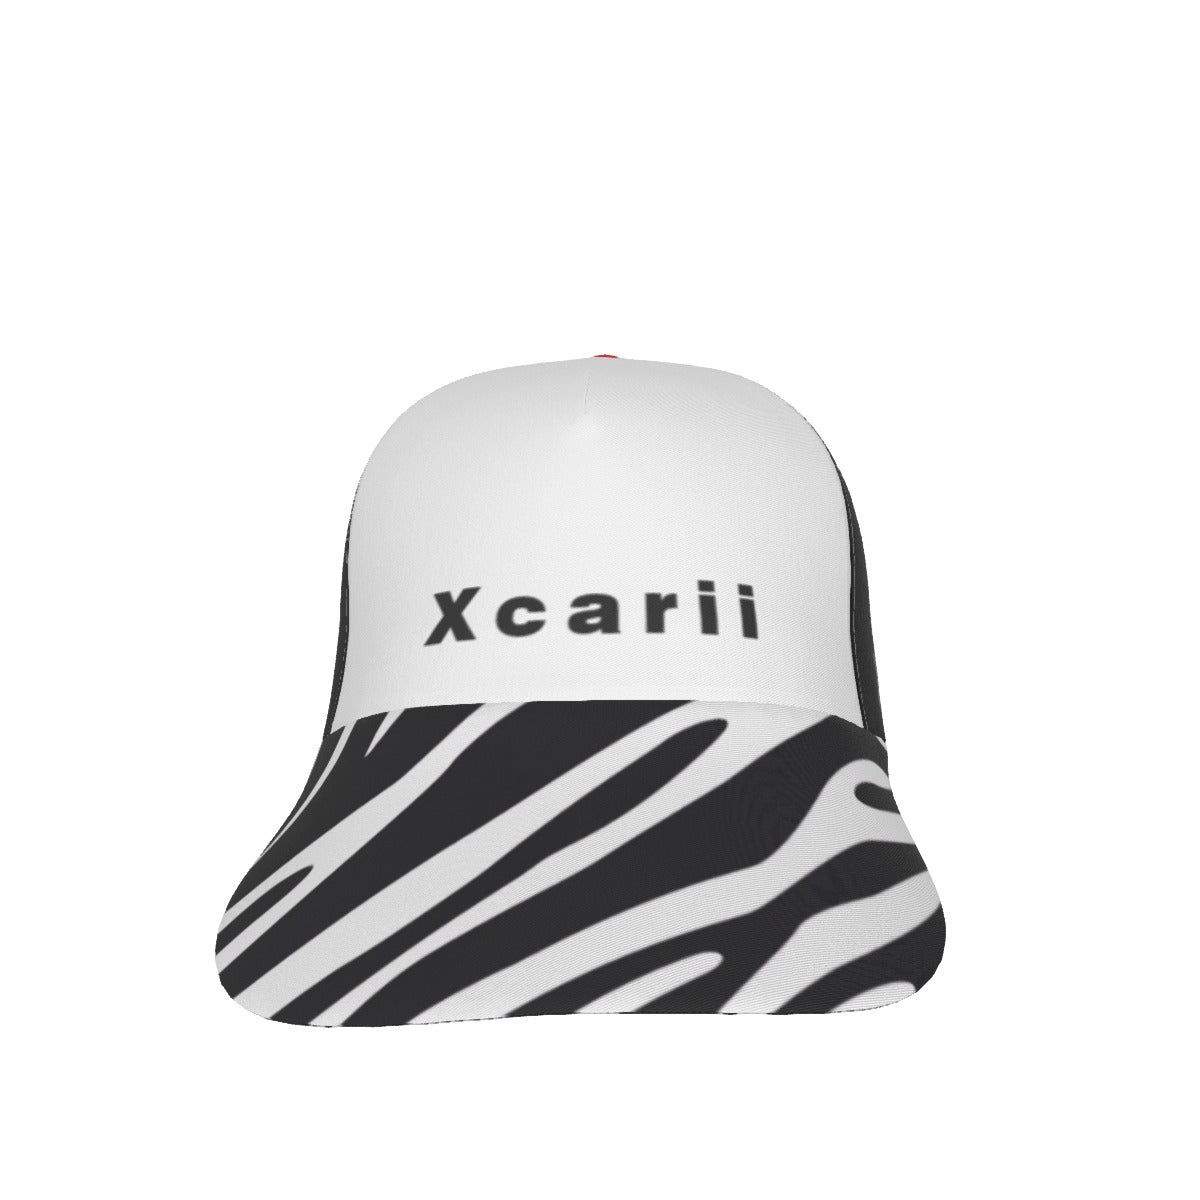 Xcarii Xii - Z Peaked Cap